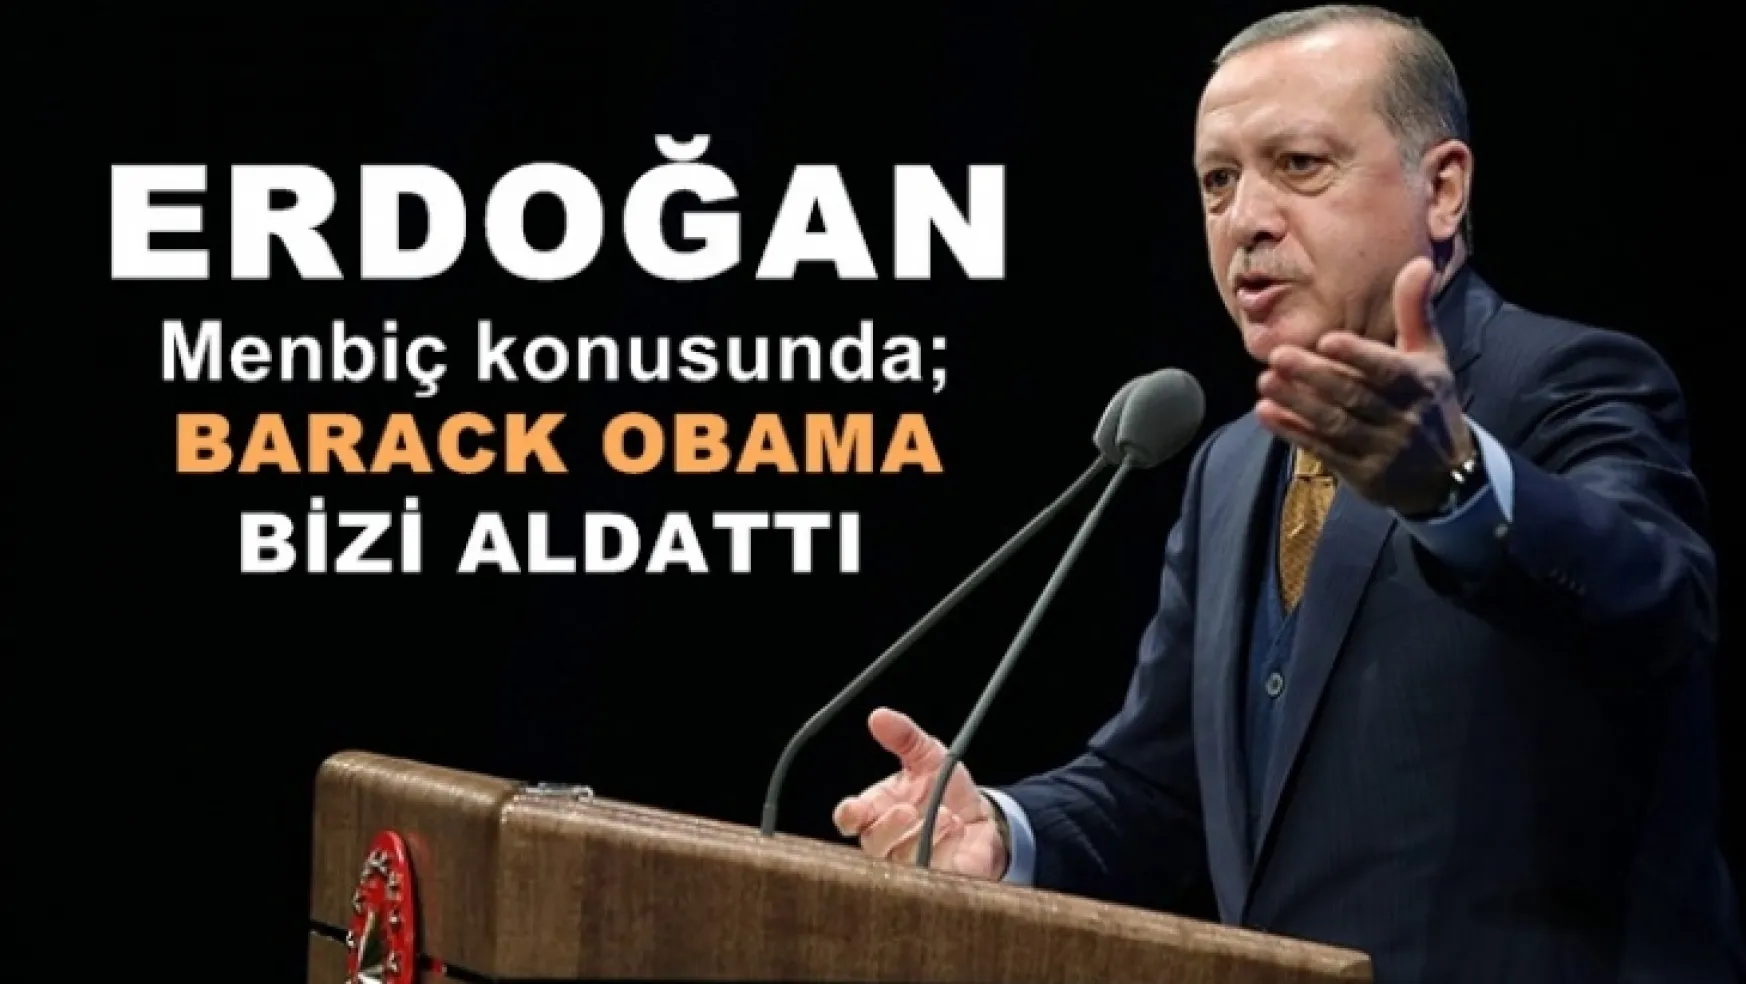 Erdoğan, 'ilk kez, 'Obama bizi aldattı dedi